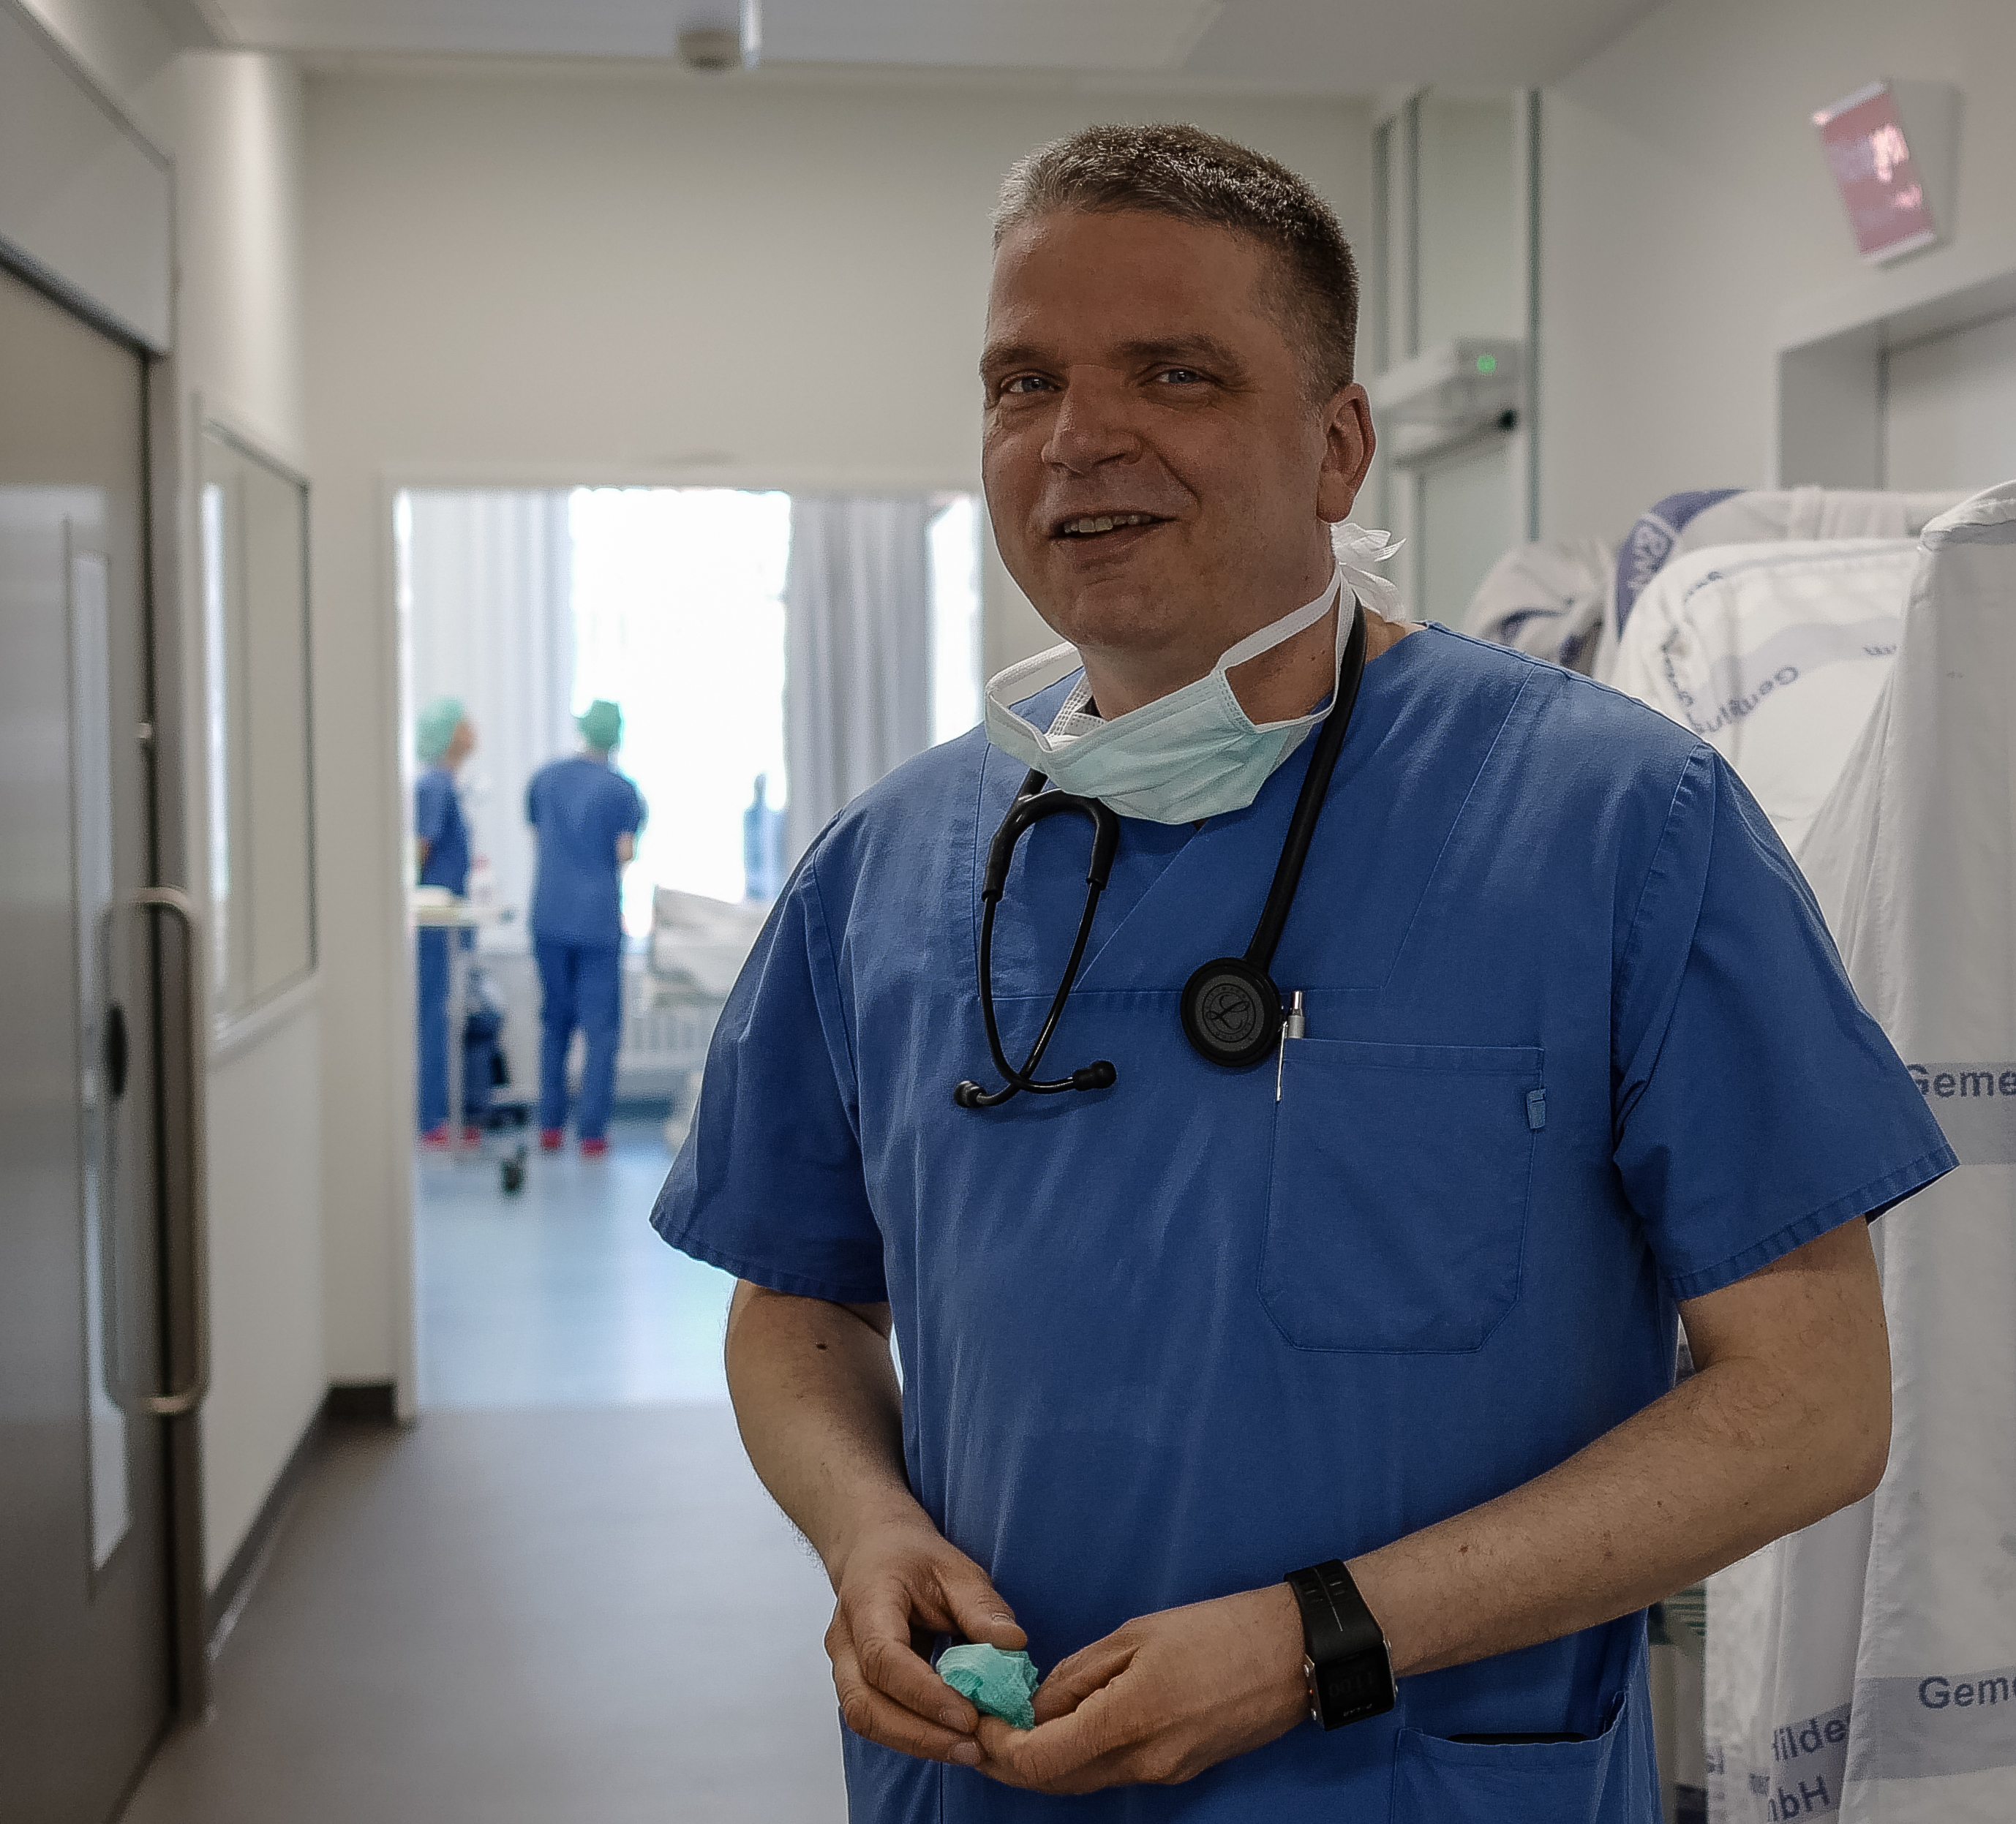 Neuer ASB-Bundesarzt kommt aus Hannover